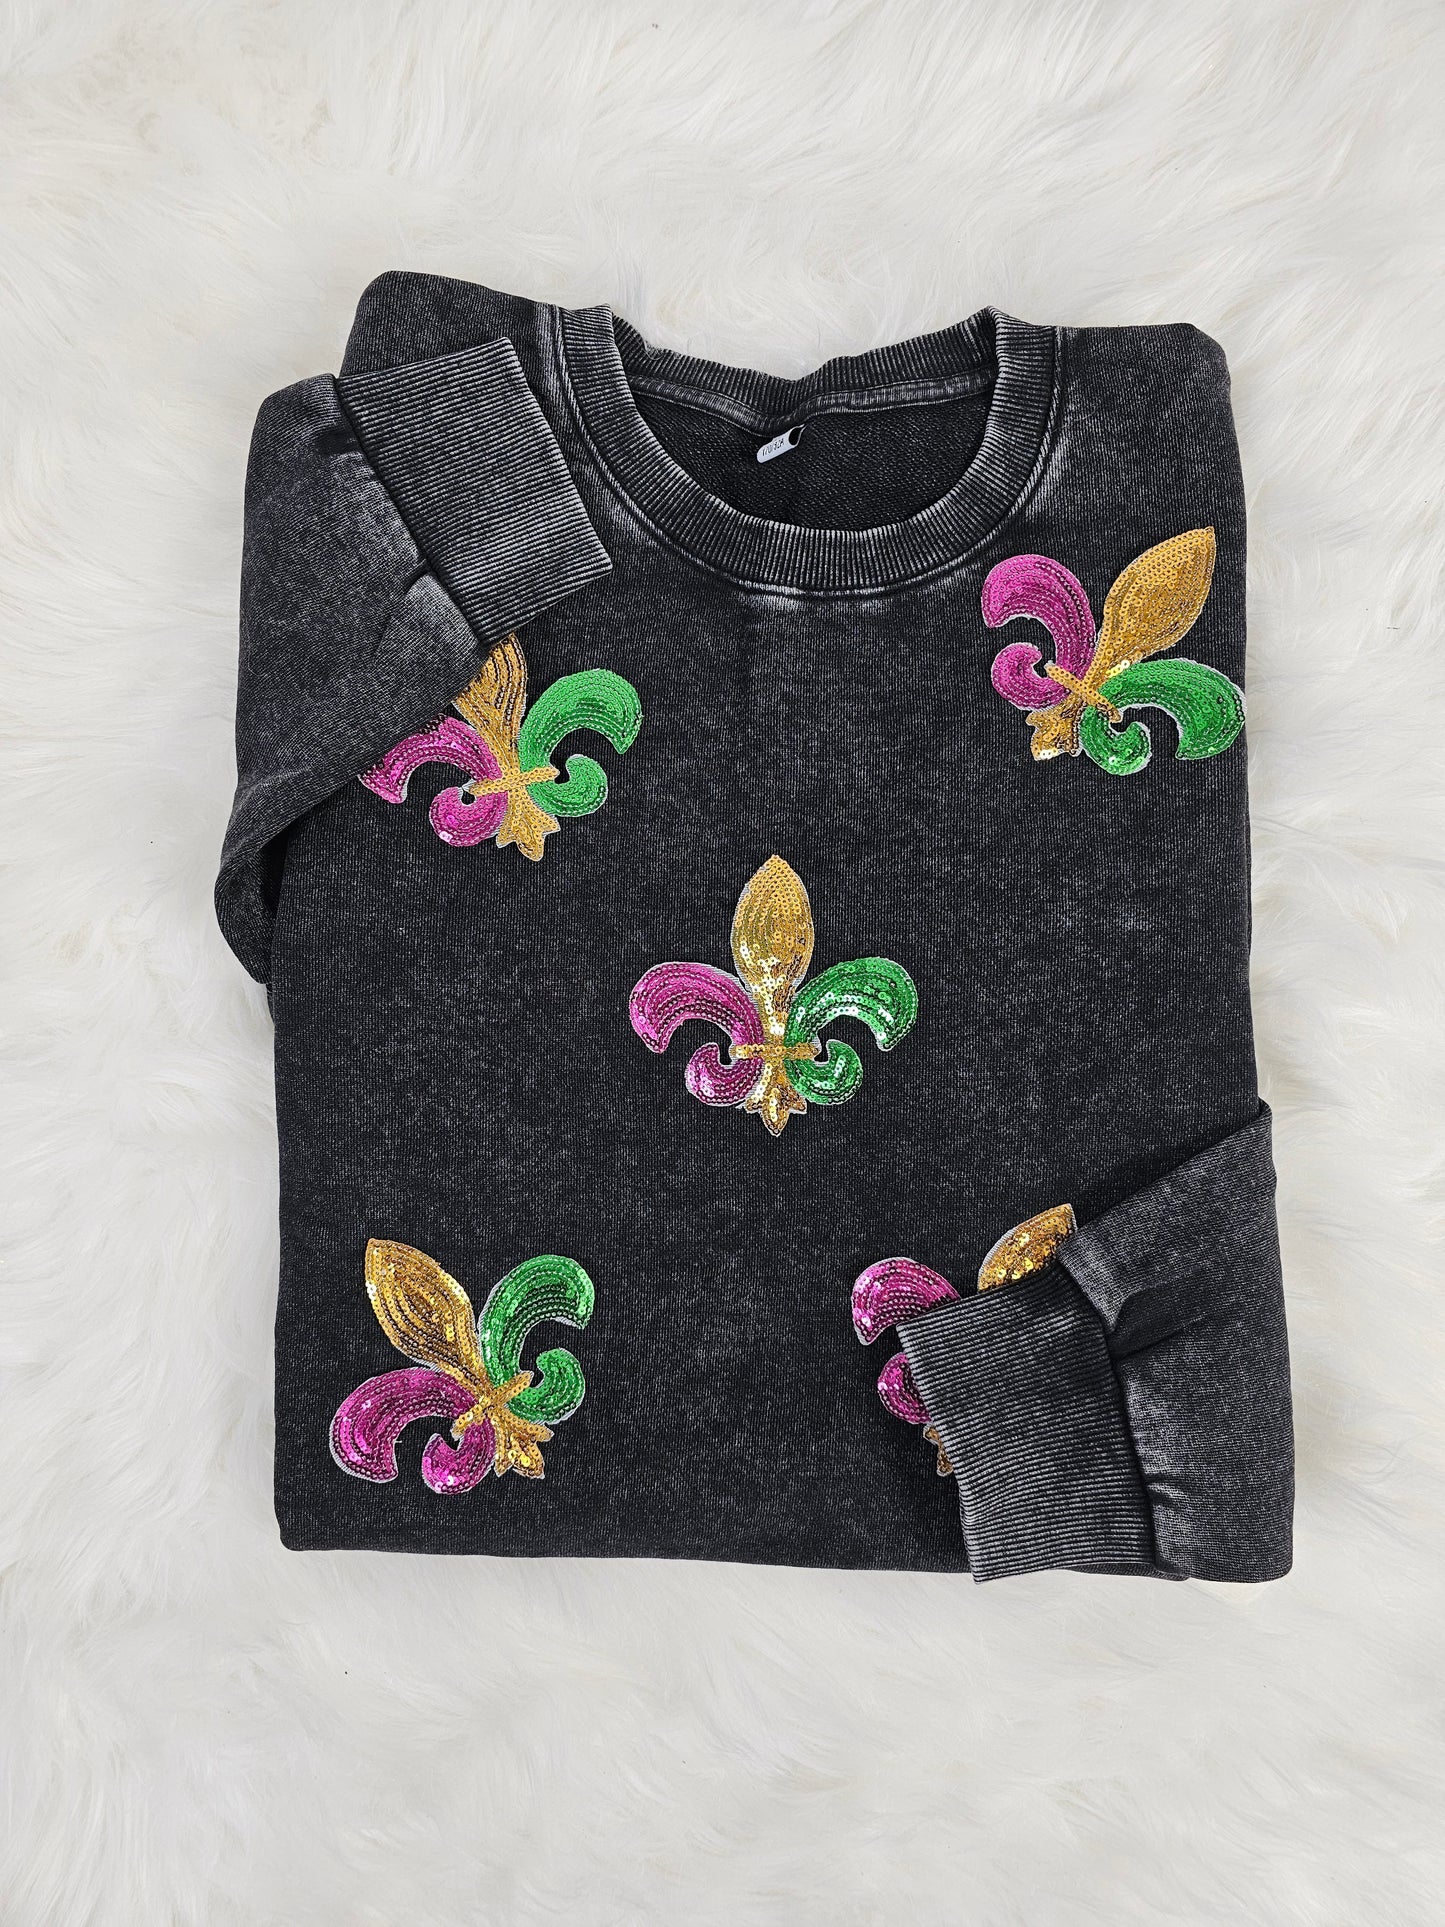 Sequin Fleur De Lis Mardi Gras Embroidery Iron On Patch